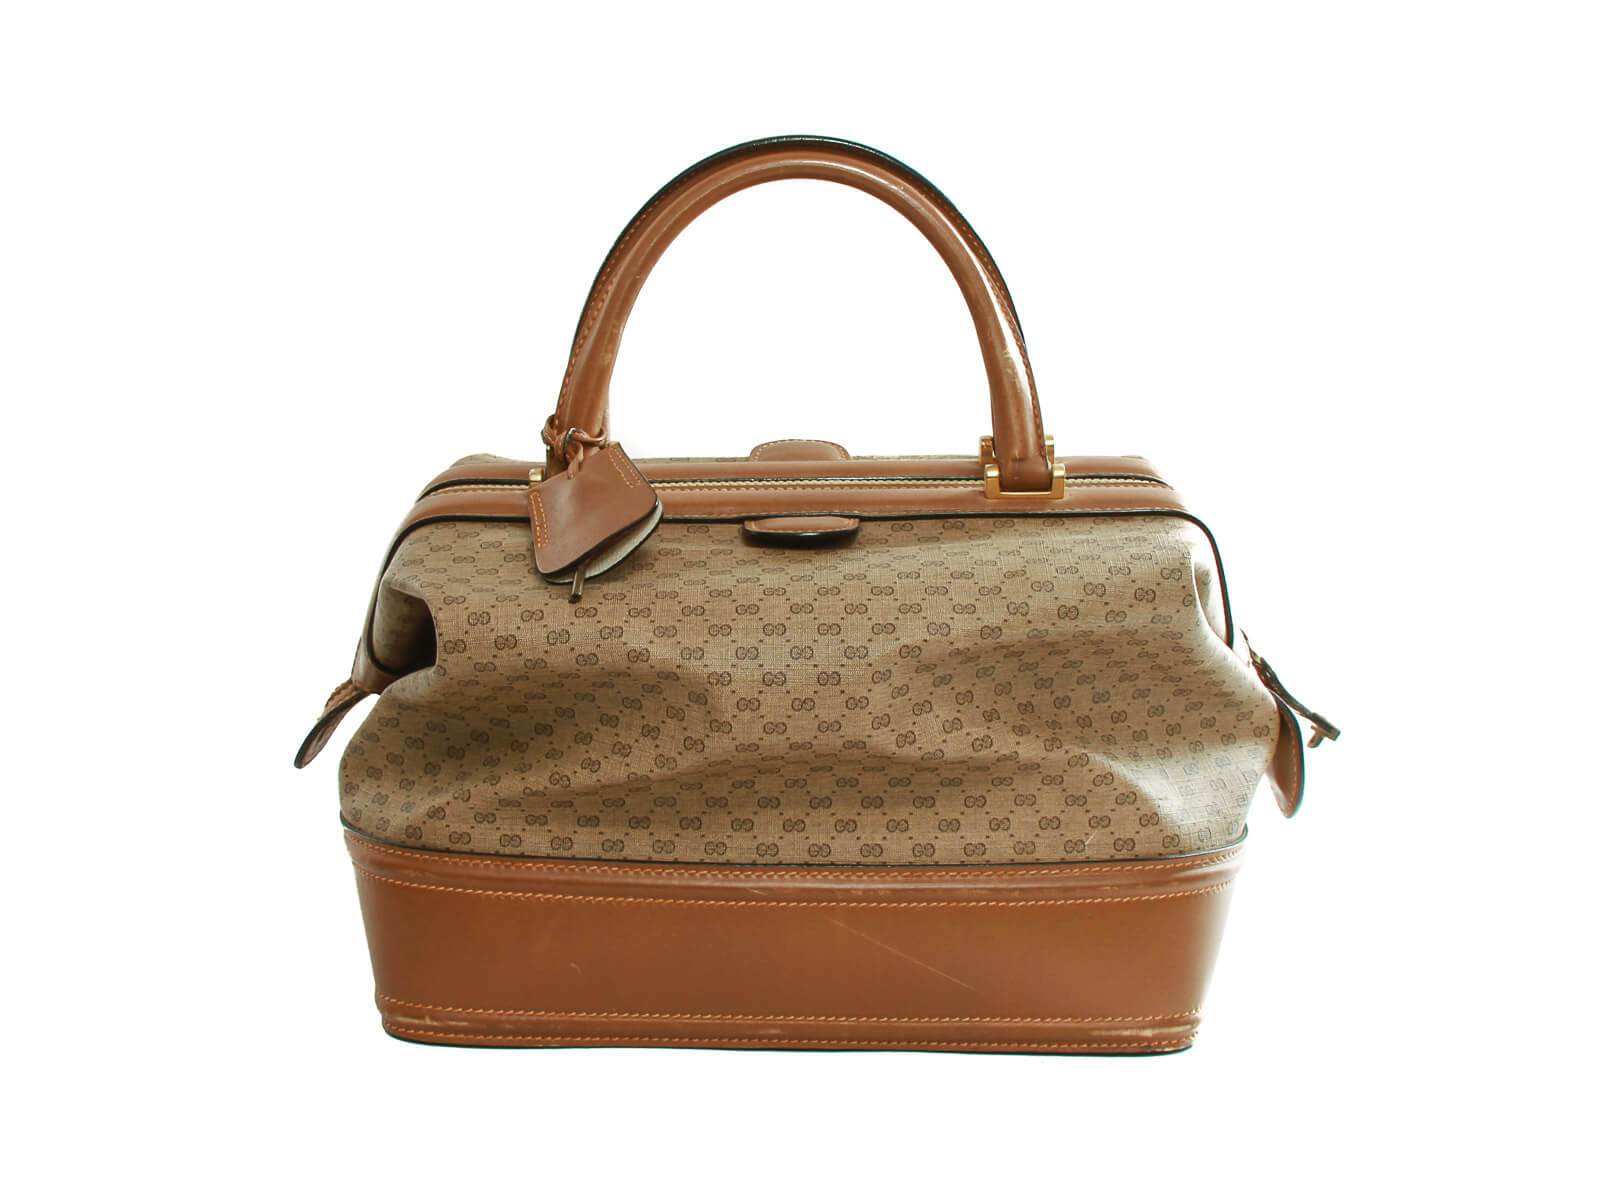 Authentic Gucci Vintage Doctors Handbag Purse Brown Logo GG